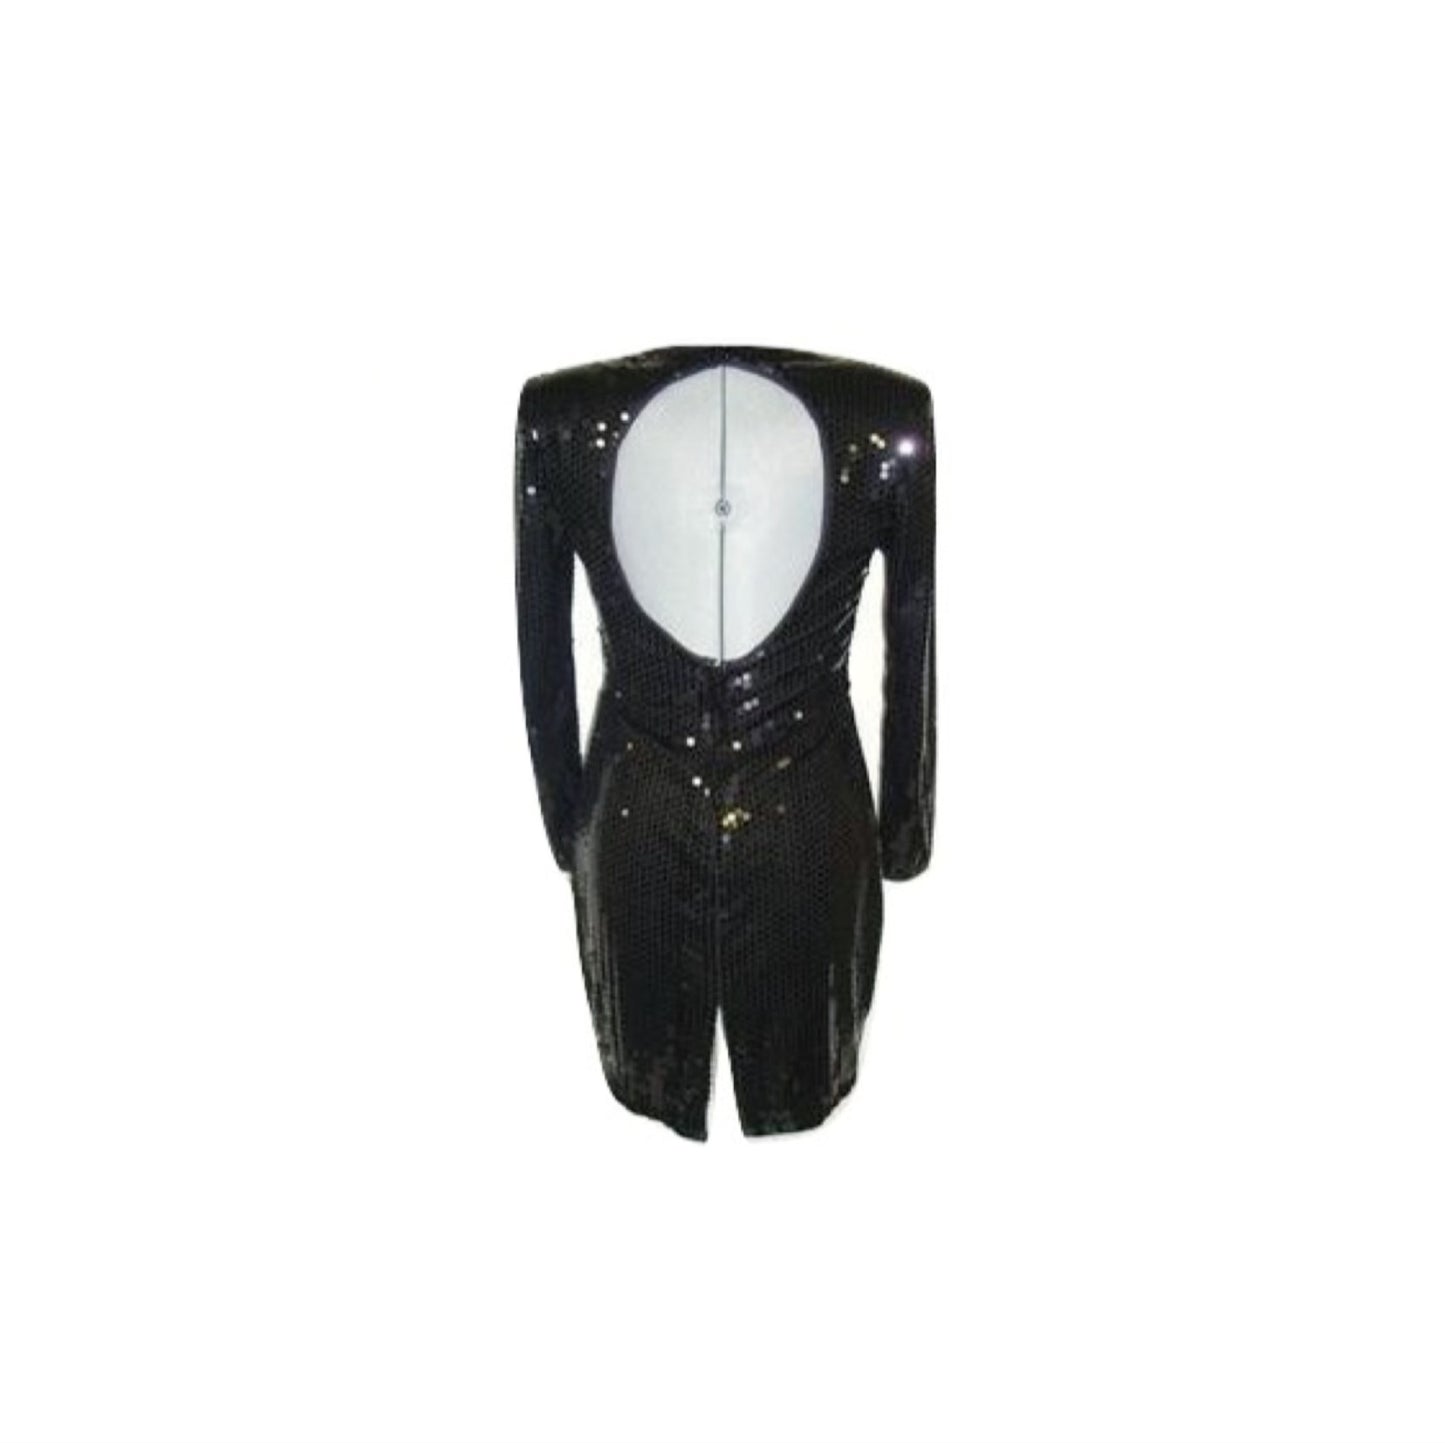 Vintage Black Sequin Stretch Open Back Wiggle Cocktail Dress 10 Medium Ld-2428